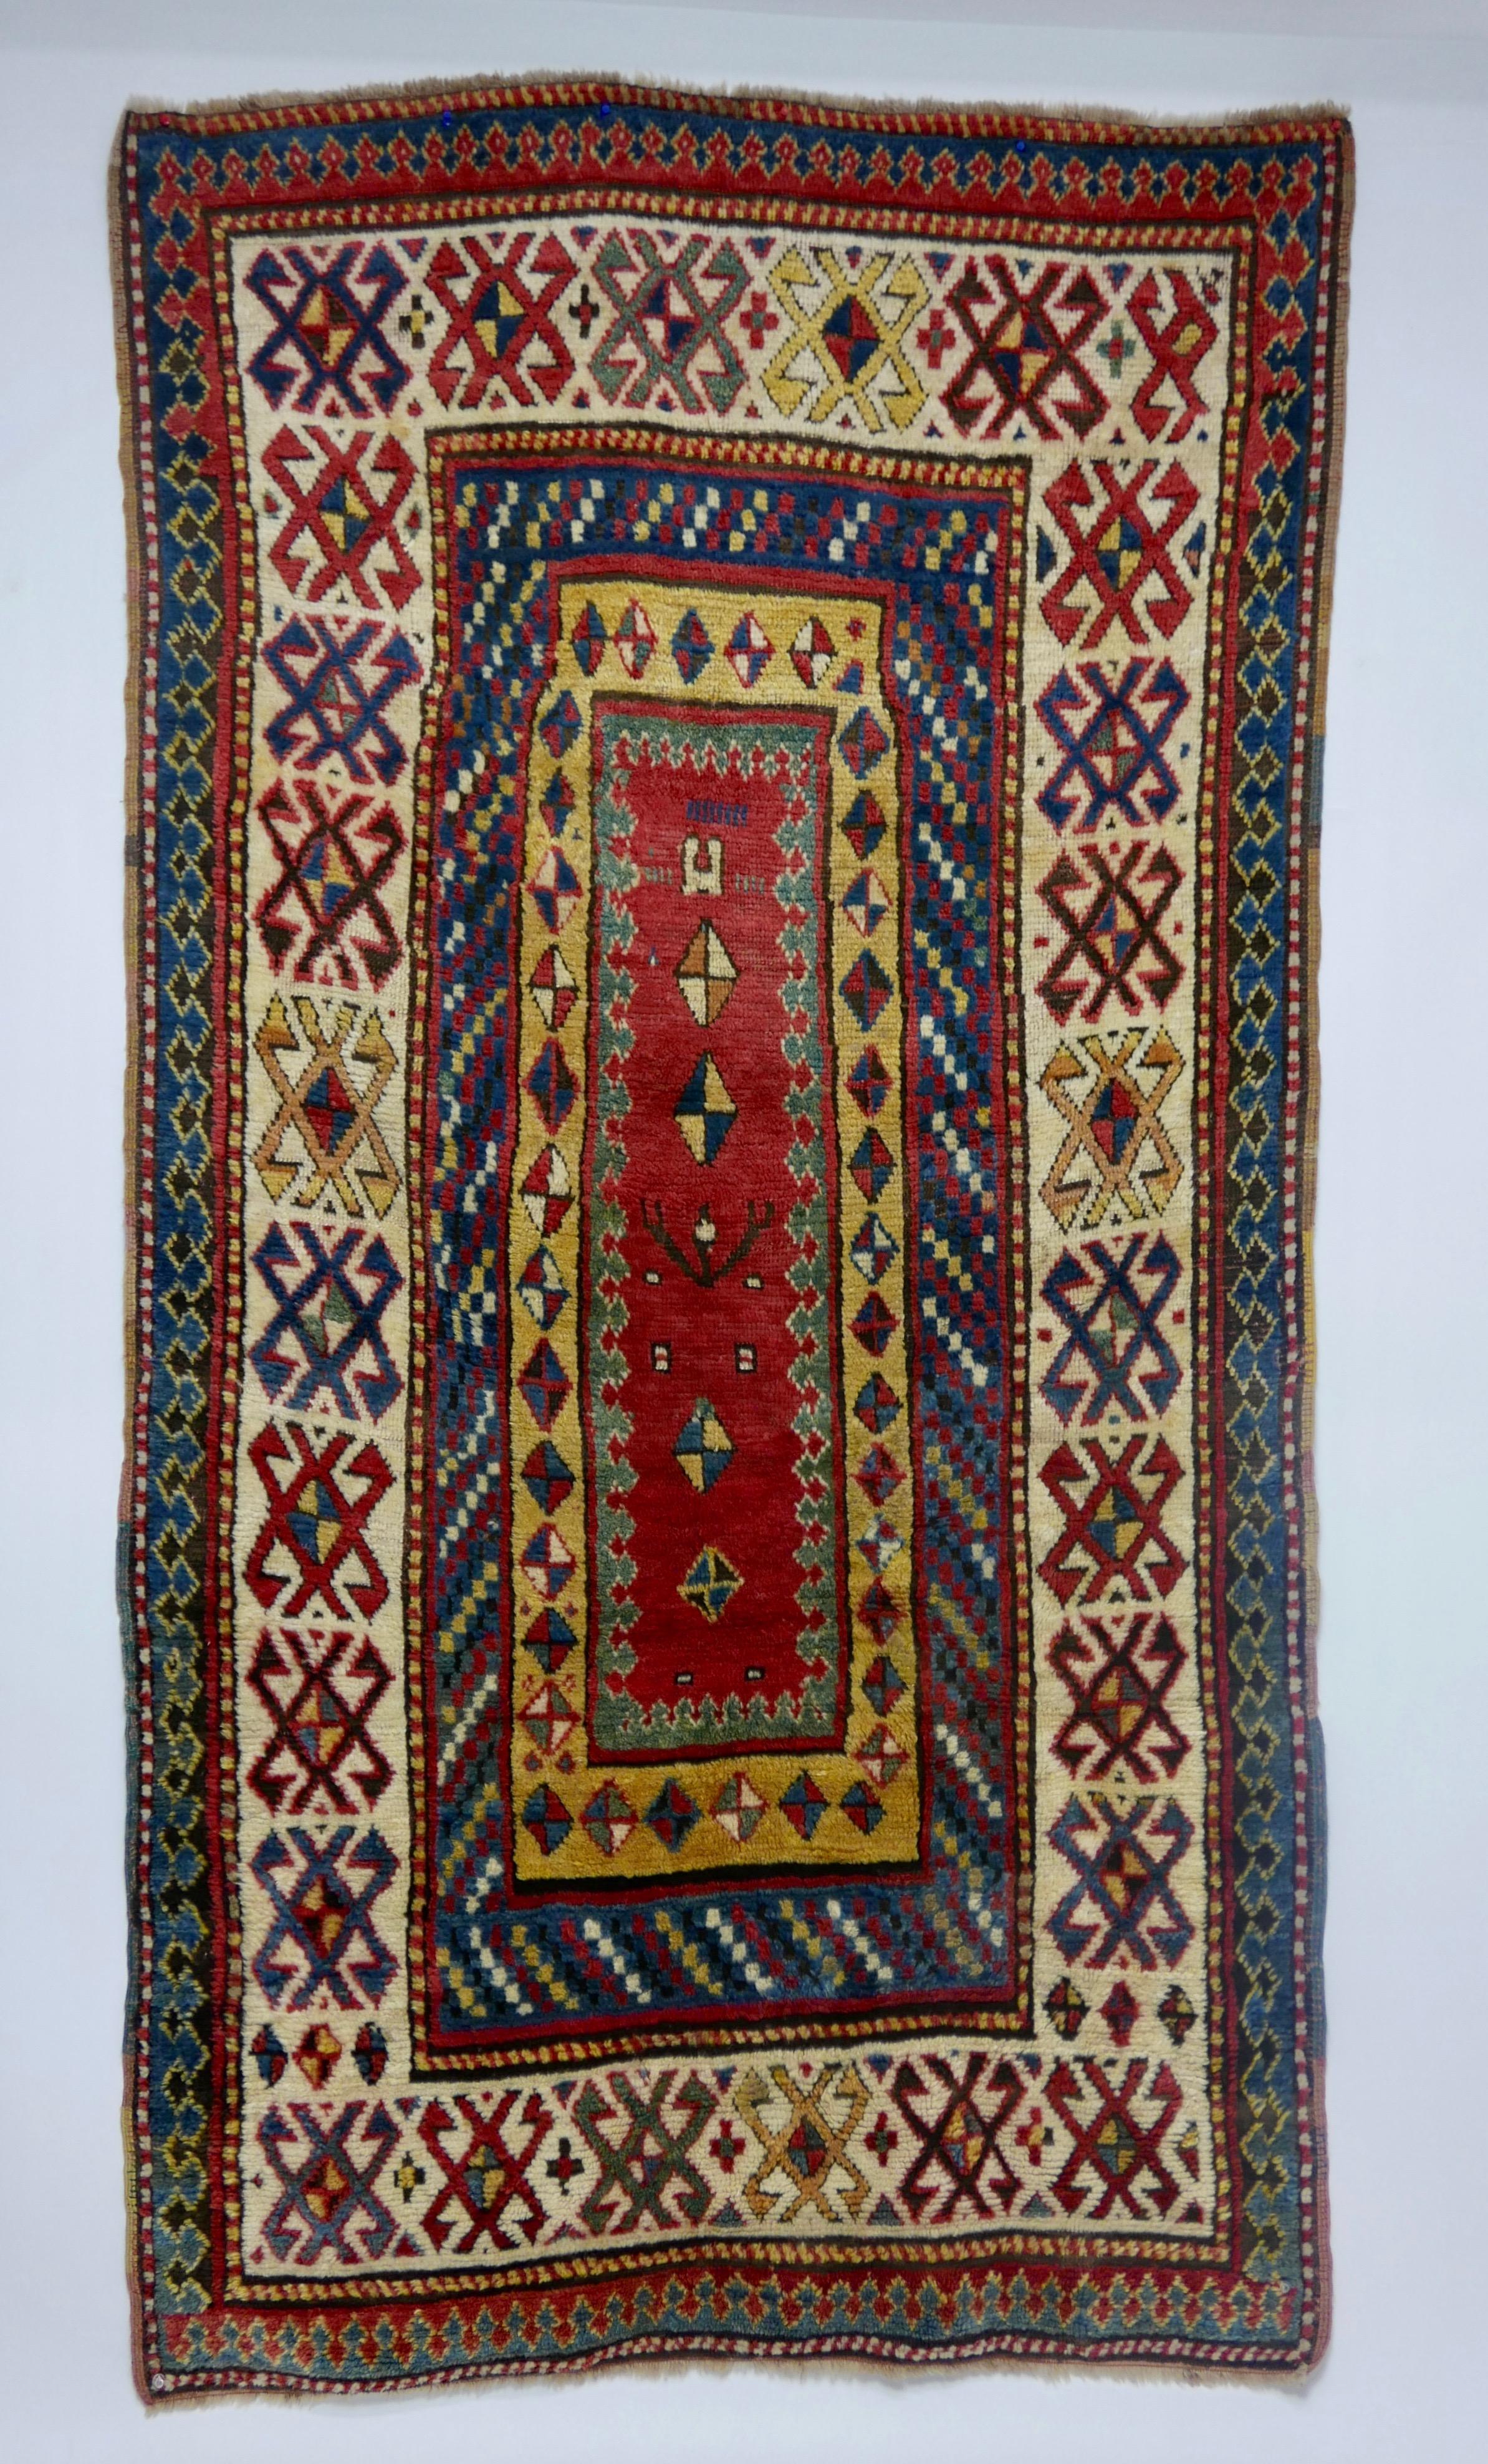 Kazakhstani Antique Kazak Wool Rug, 19th Century Kazakhstan